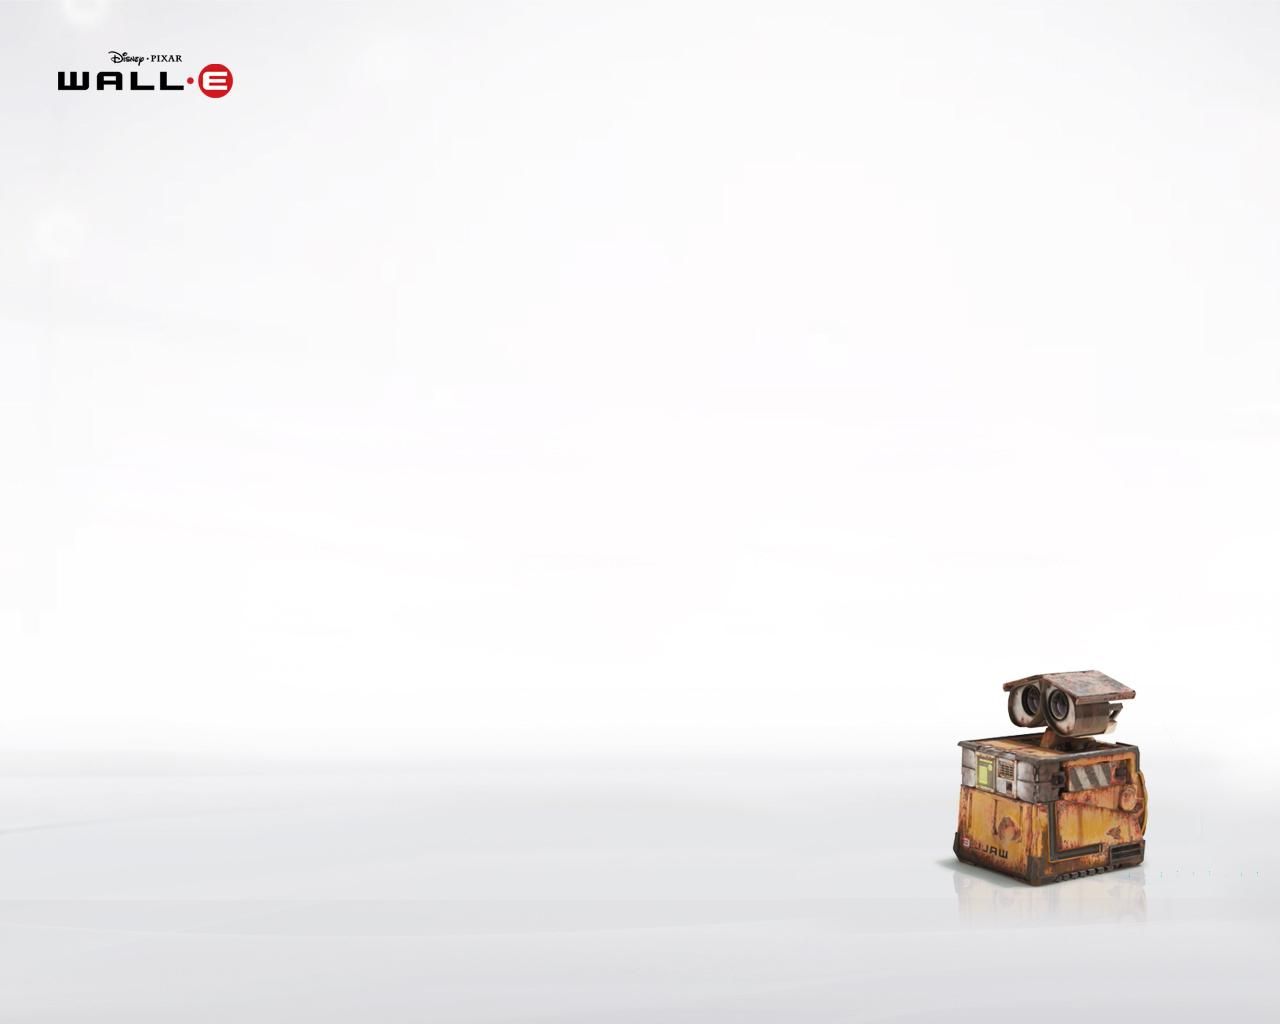 Фильм ВАЛЛ-И | WALL*E - лучшие обои для рабочего стола